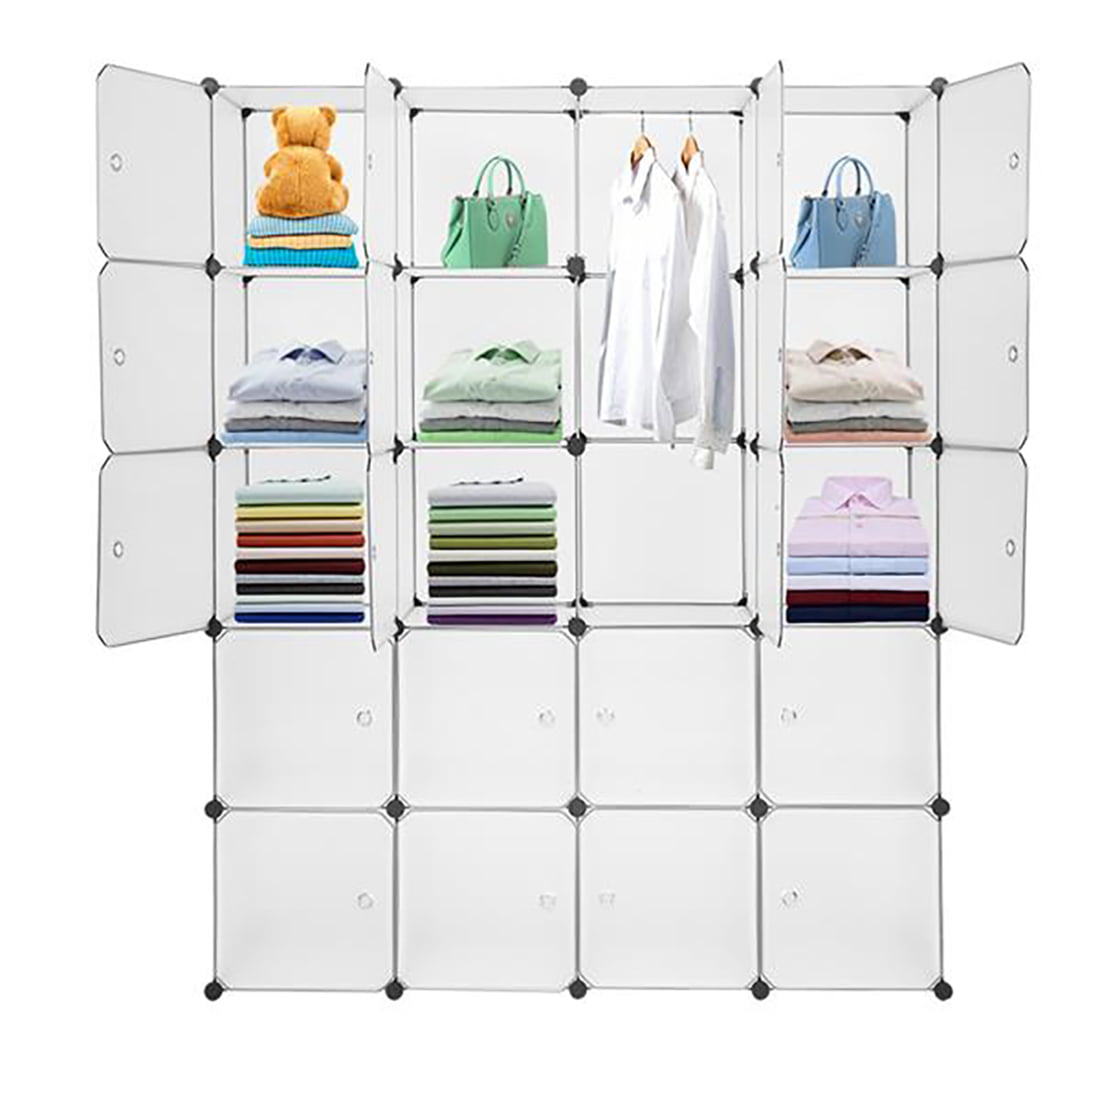 Details about   20 Cube Organizer Stackable Plastic Cube Storage Shelves Closet Cabinet w/Hanger 